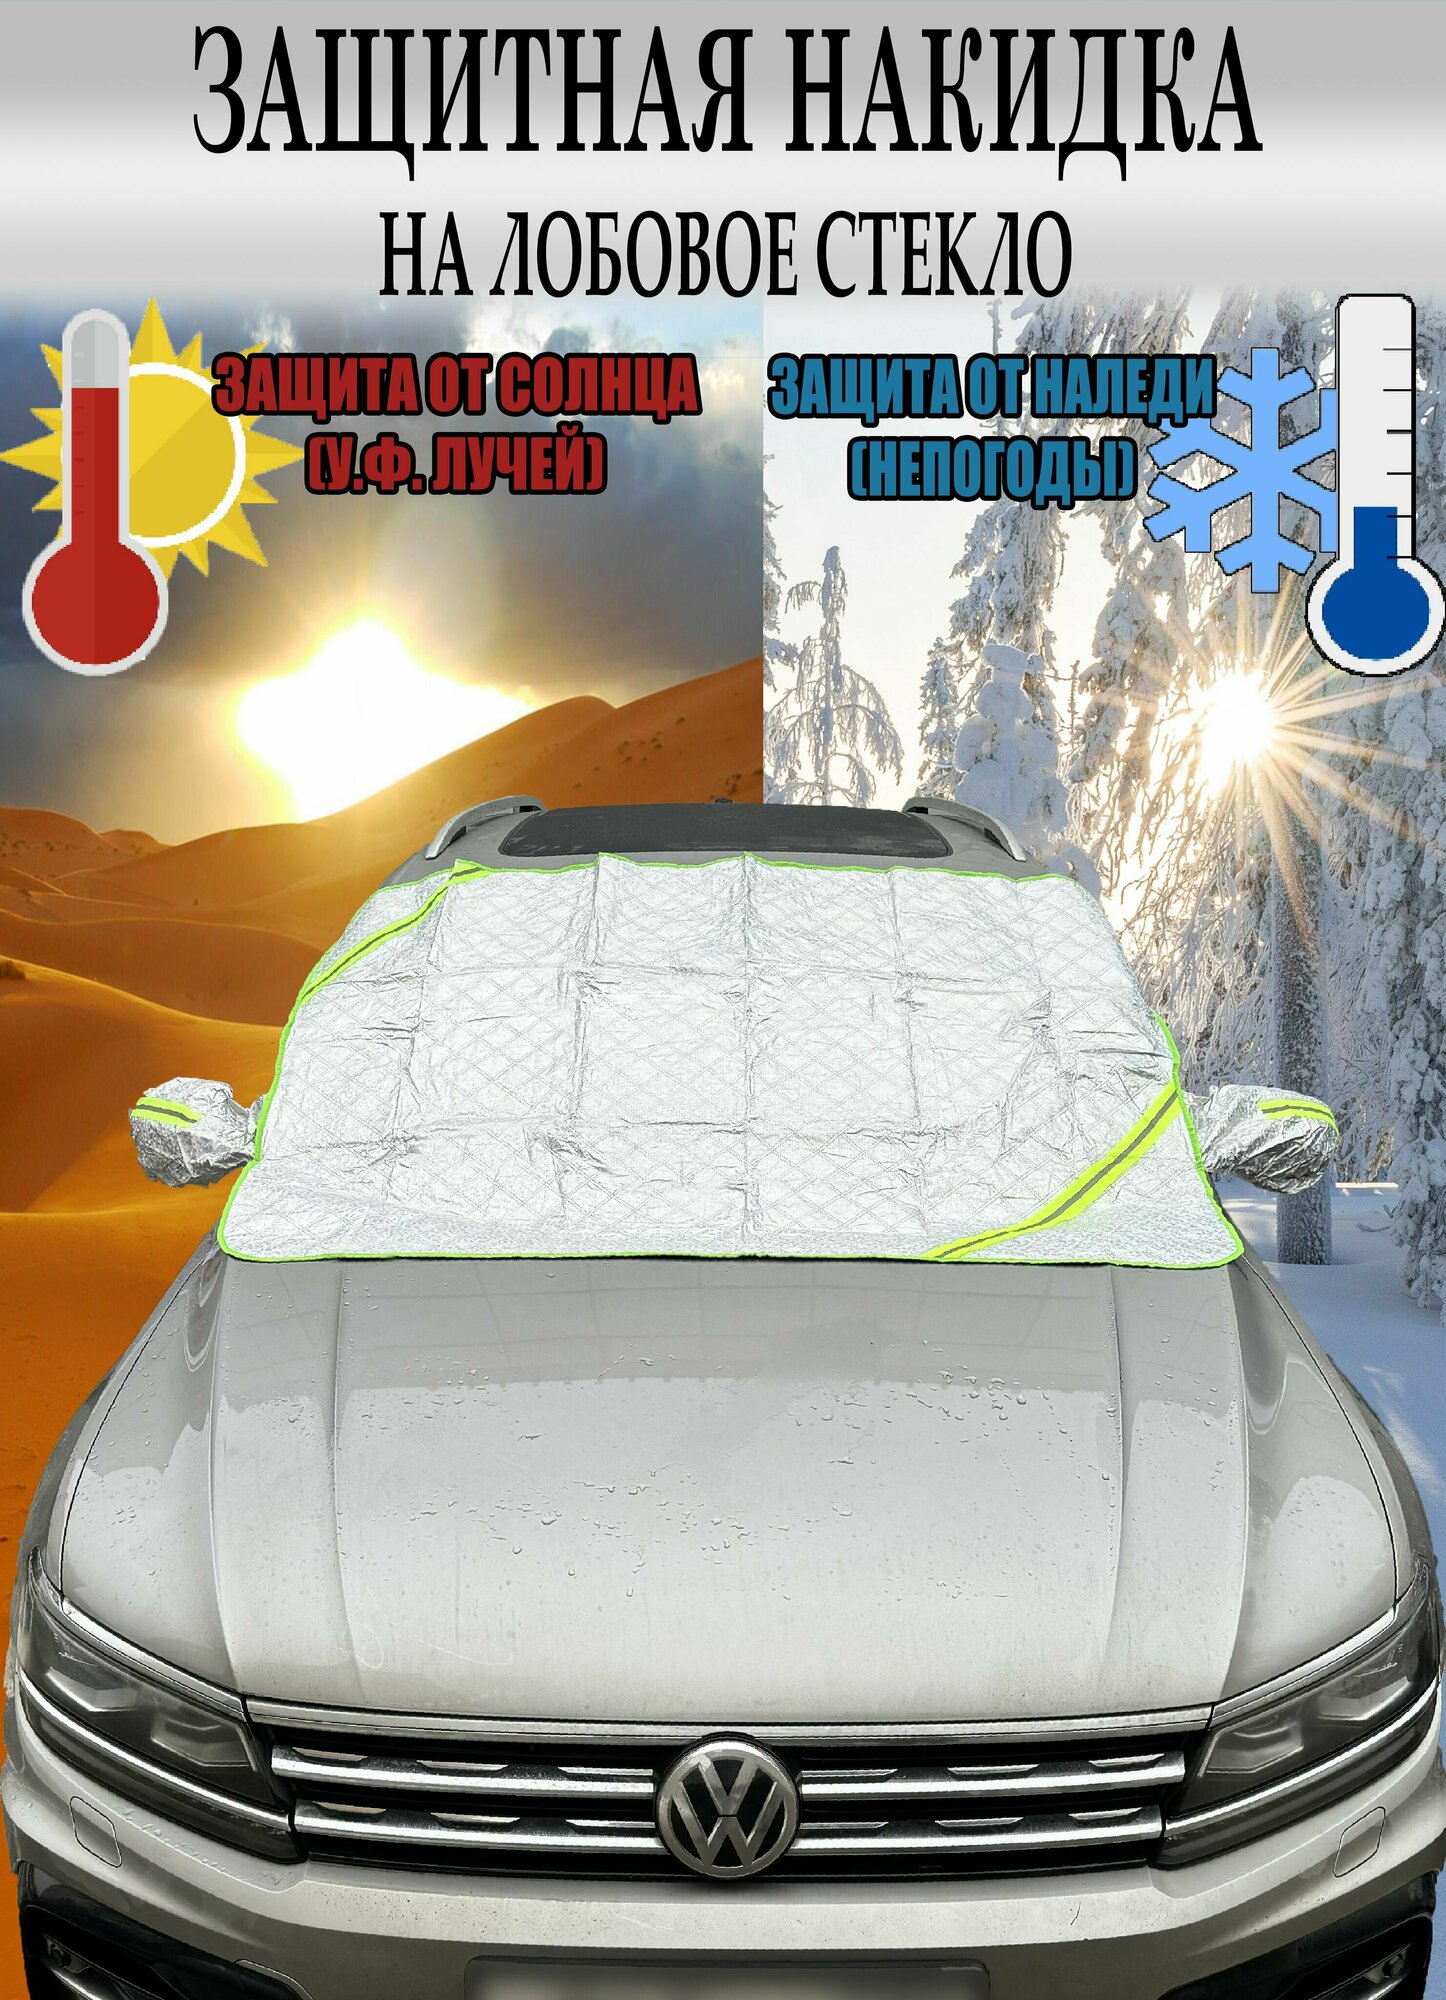 Защитная накидка (чехол) от наледи, солнца на лобовое стекло Тойота Рав4 (2010 - 2016) внедорожник 5 дверей / Toyota RAV4, Полиэстер (высокого качества), Серебристый, размер 160х115 см